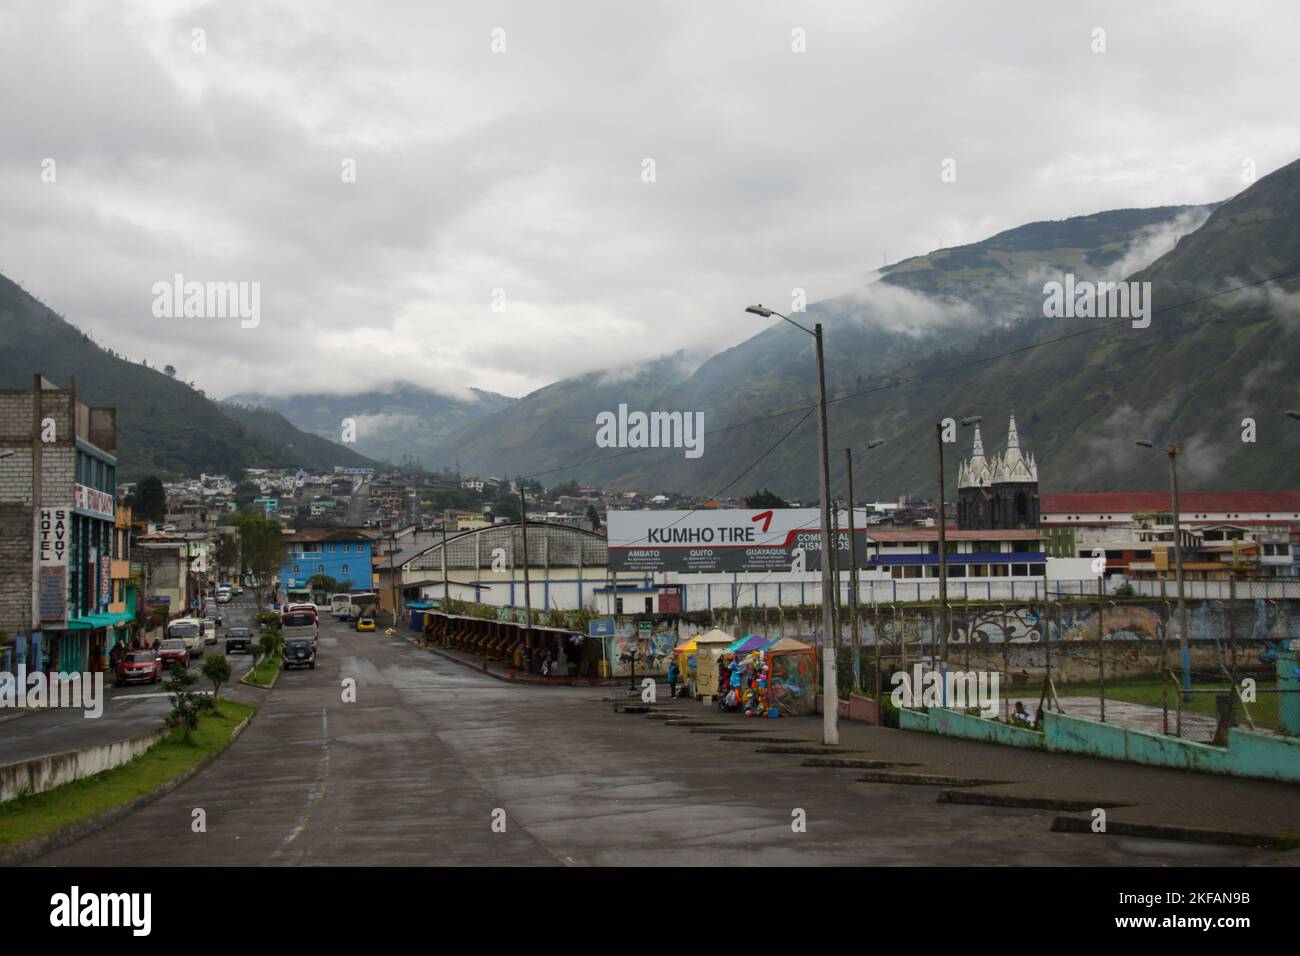 Cityscape of Banos, Ecuador. Baños de Agua Santa commonly referred to as Baños, is a city in eastern Tungurahua Province of Ecuador. Stock Photo